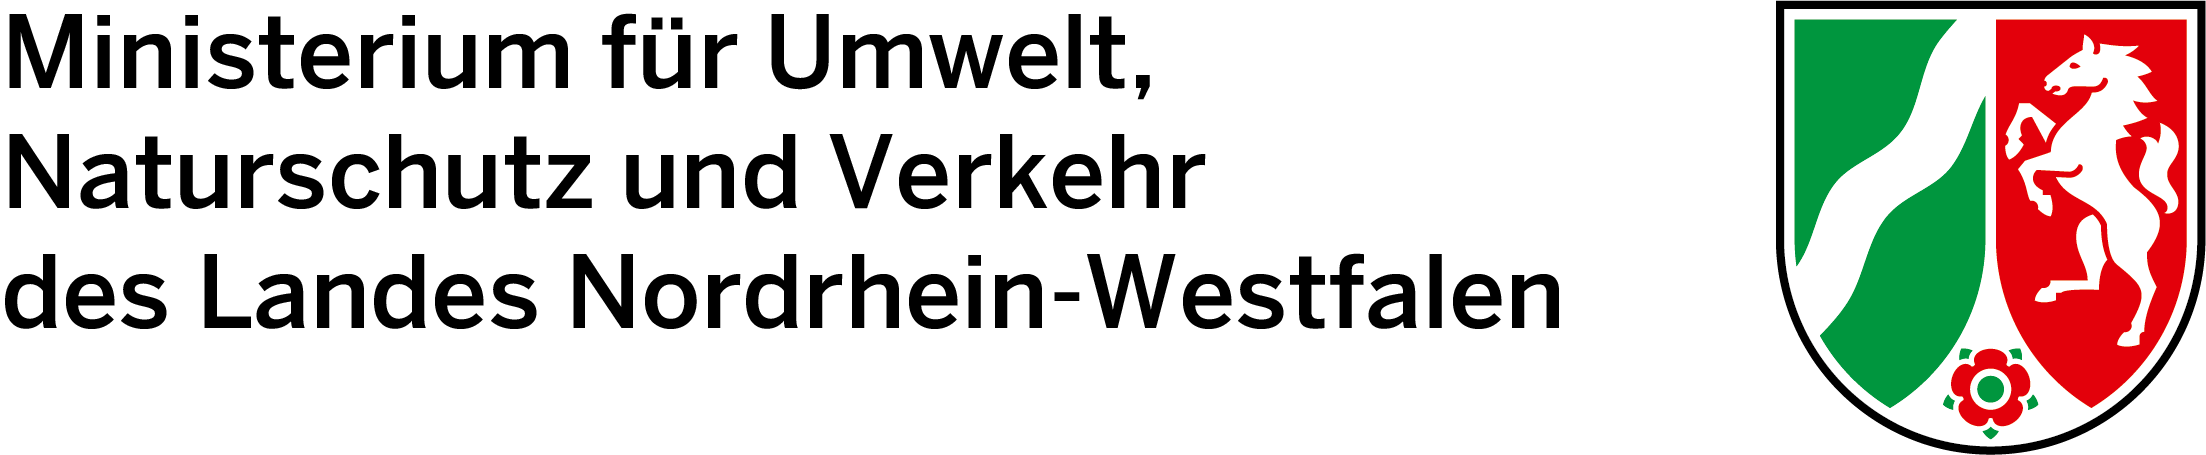 Logo des Ministeriums für Umwelt, Naturschutz und Verkehr von NRW in schwarz mit dem Wappen von NRW.